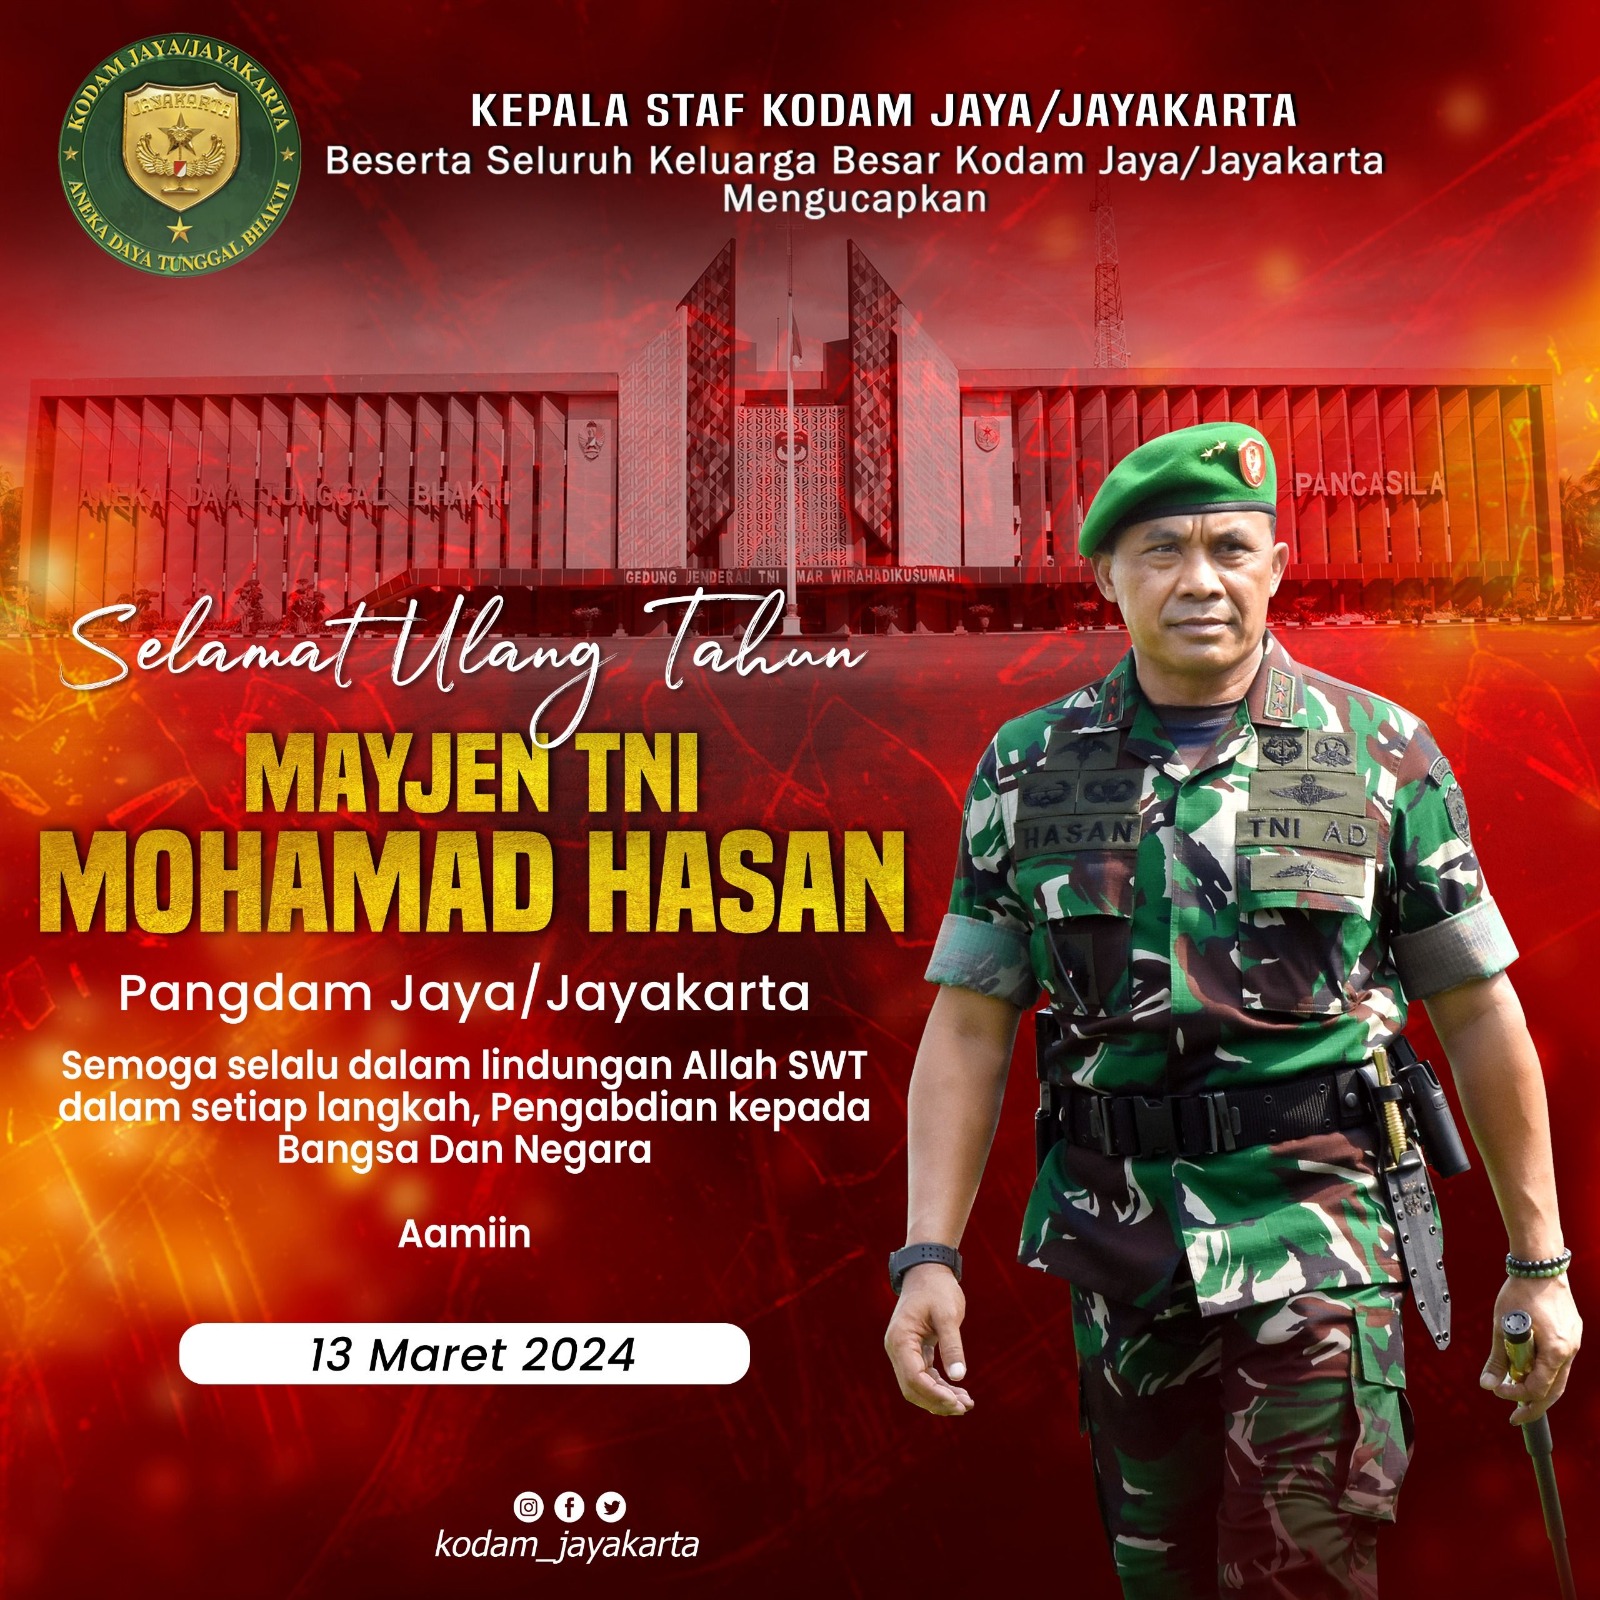 Selamat Ulang Tahun Pangdam Jaya/Jayakarta - Mayjen TNI Mohamad Hasan